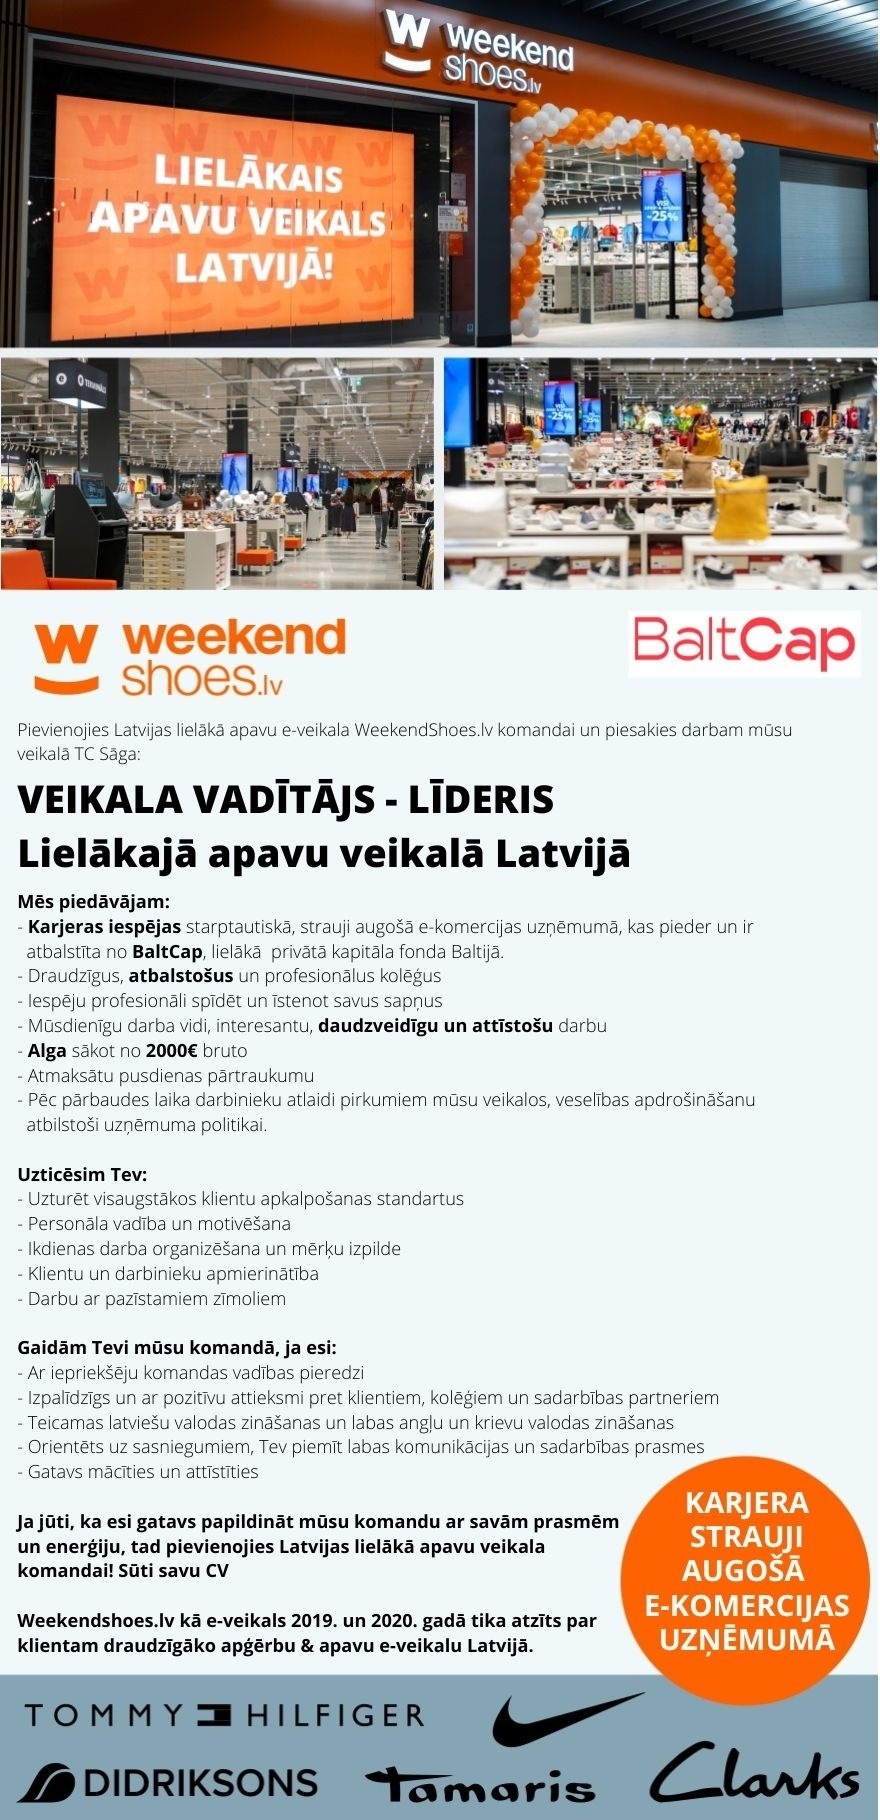 WEEKEND LATVIA, SIA Veikala vadītājs(-a) - līderis(-e) lielākajā apavu veikalā Latvijā